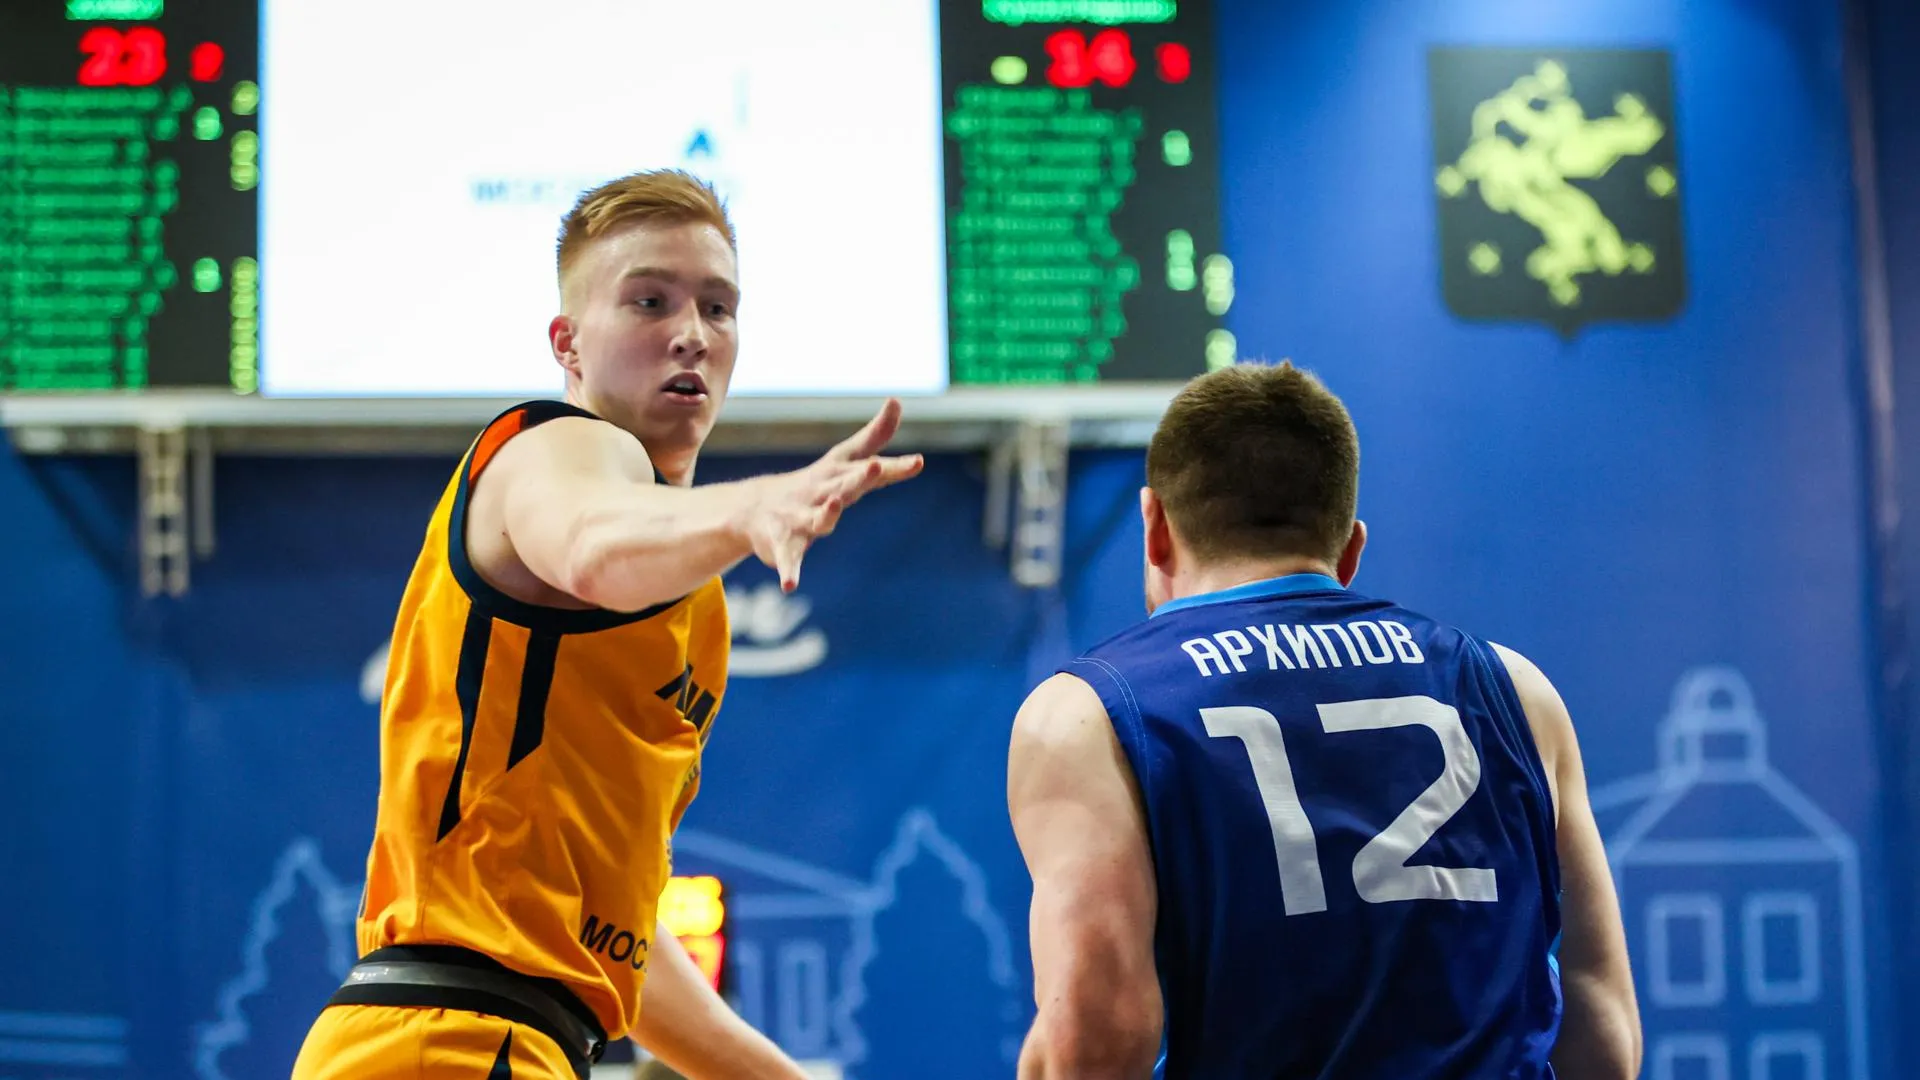 Баскетболисты из Химок обыграли команду из Ижевска на чемпионате России